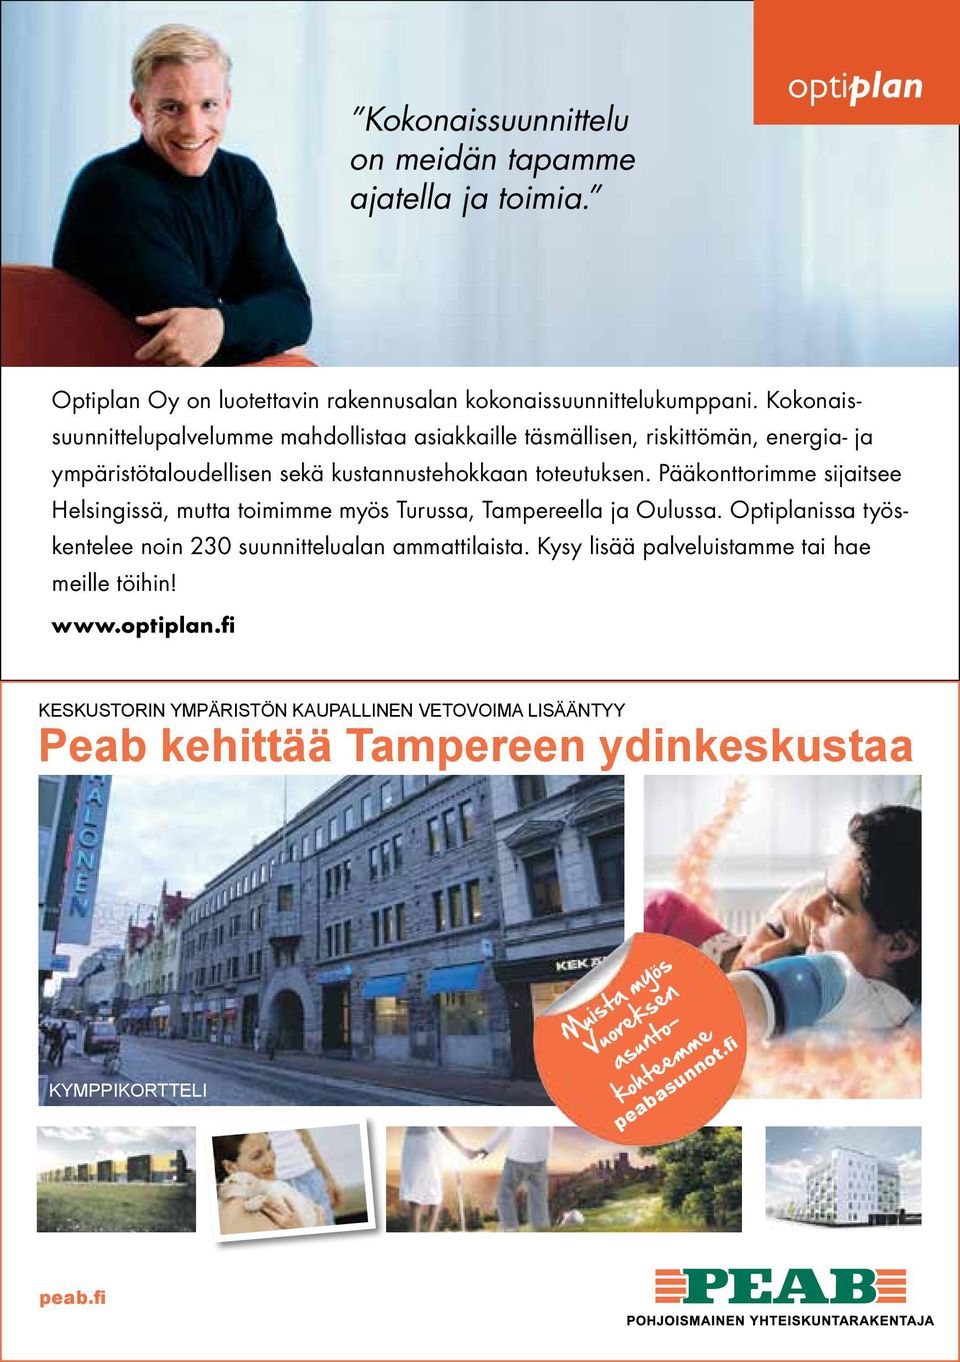 Pääkonttorimme sijaitsee Helsingissä, mutta toimimme myös Turussa, Tampereella ja Oulussa. Optiplanissa työskentelee noin 230 suunnittelualan ammattilaista.